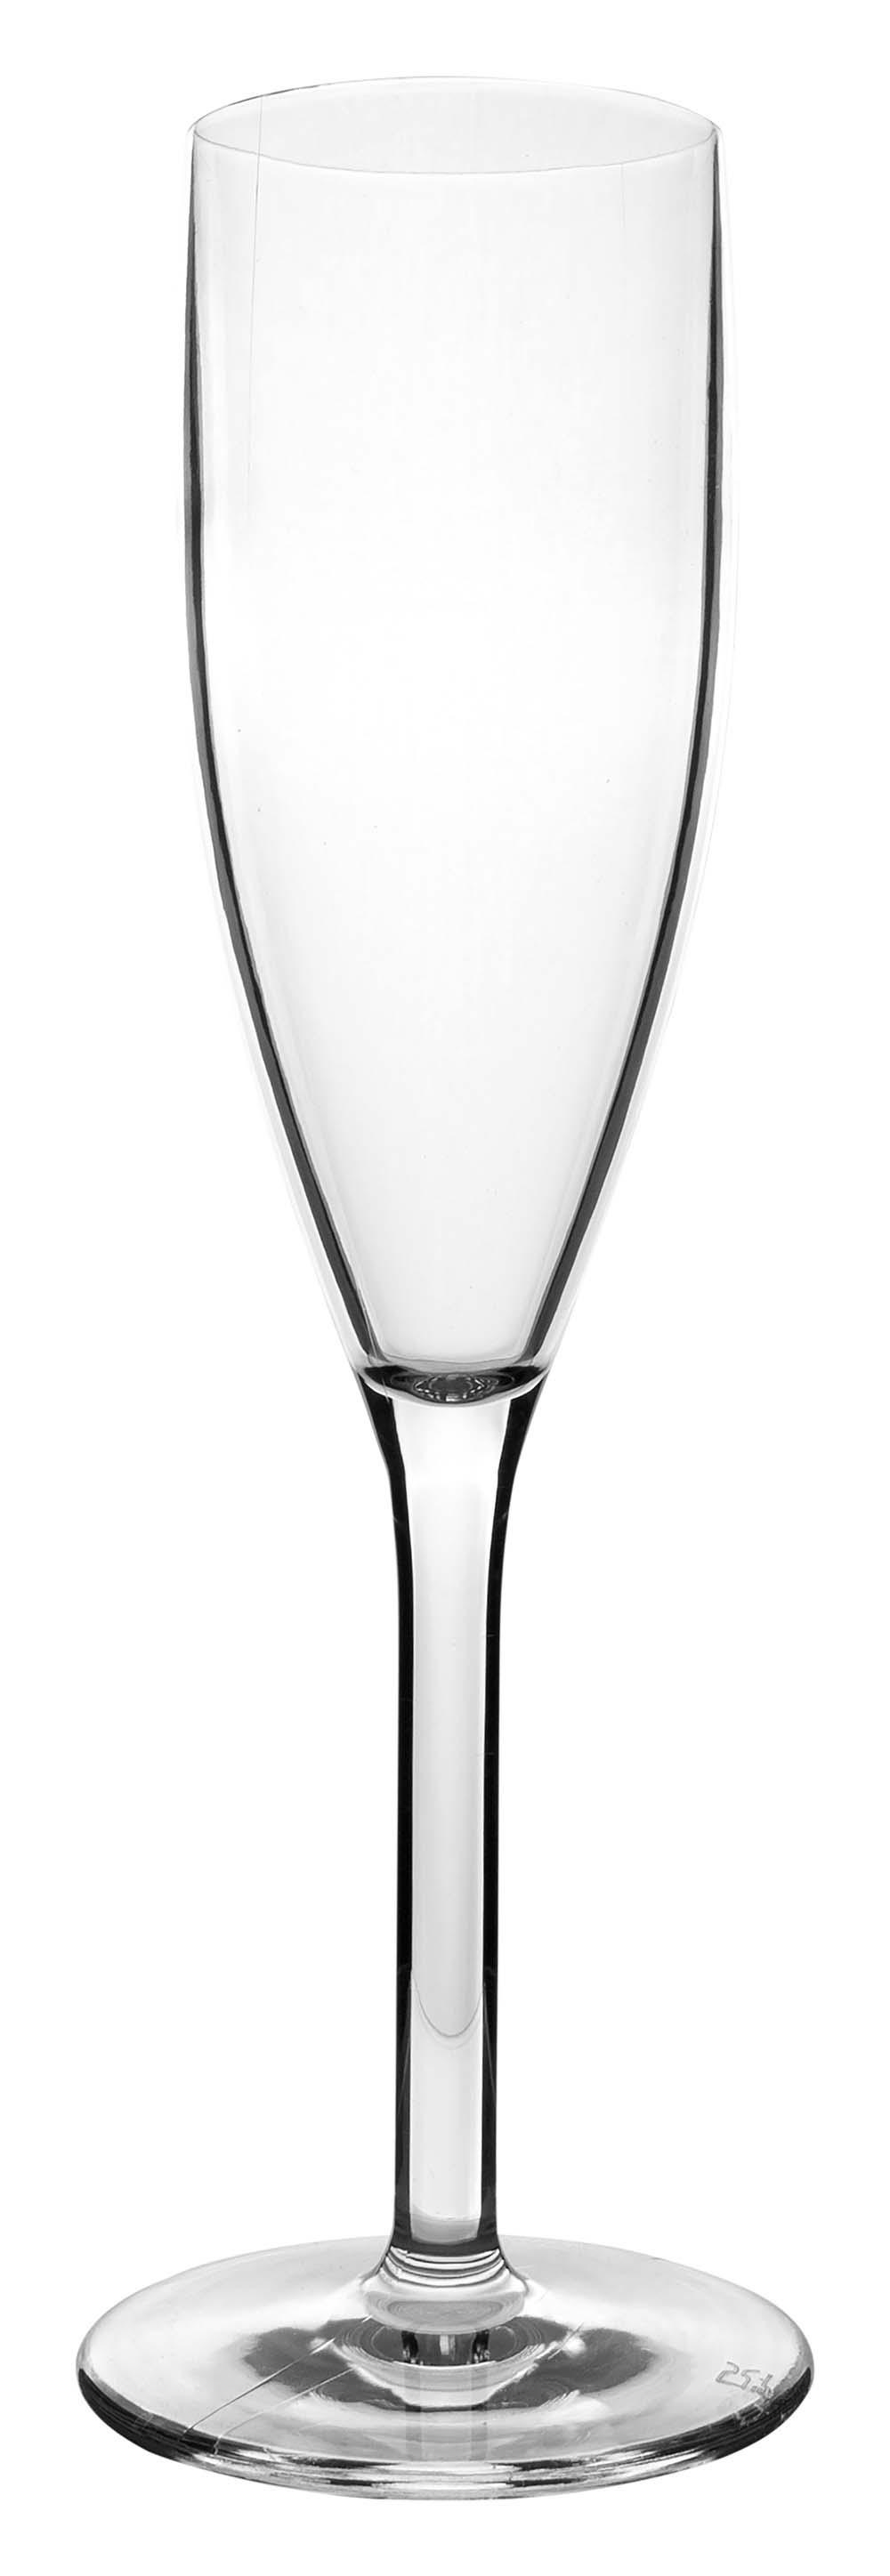 6101437 Een extra stevig en luxe champagneglas. Gemaakt van 100% polycarbonaat waardoor het glas vrijwel onbreekbaar, lichtgewicht en kraswerend. Ook is dit glas vaatwasmachinebestendig.